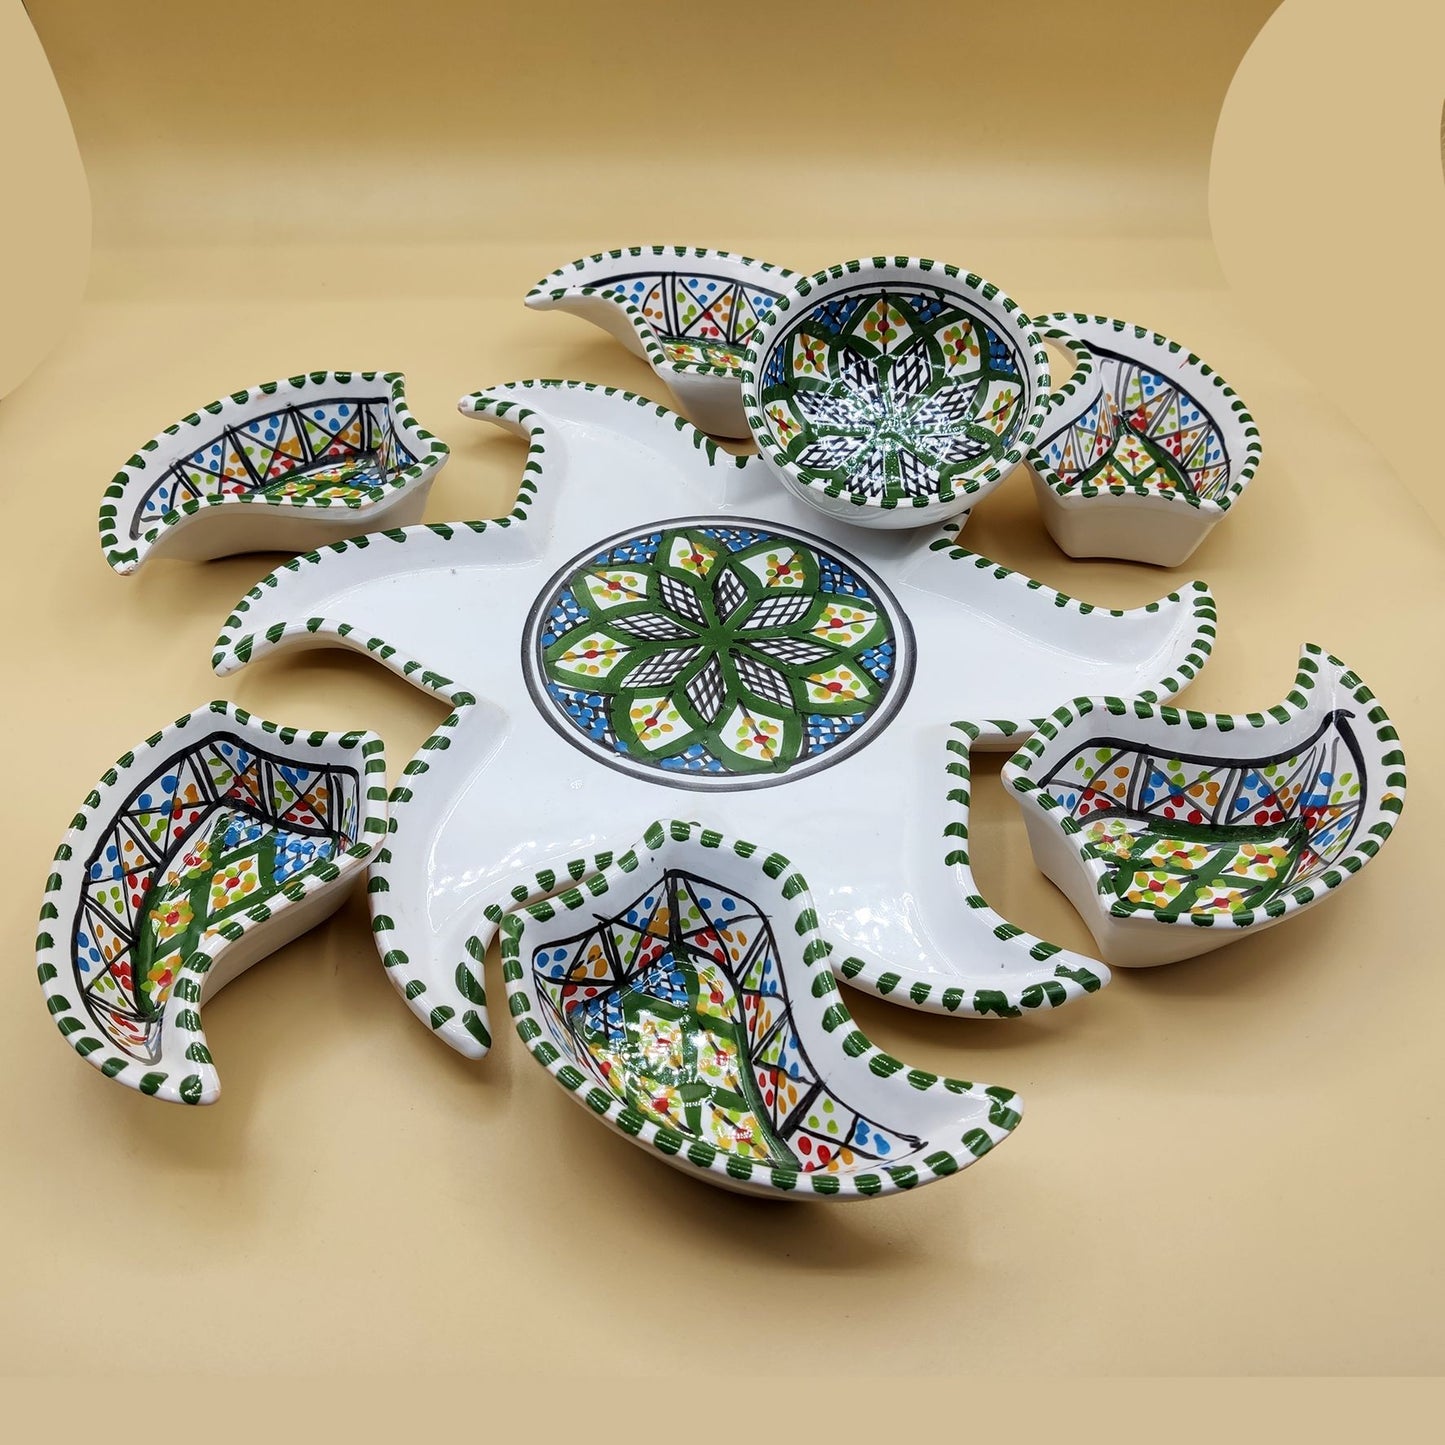 Antipastiera Piatto Etnico Ceramica Terracotta Tunisina Marocchina 2611201201